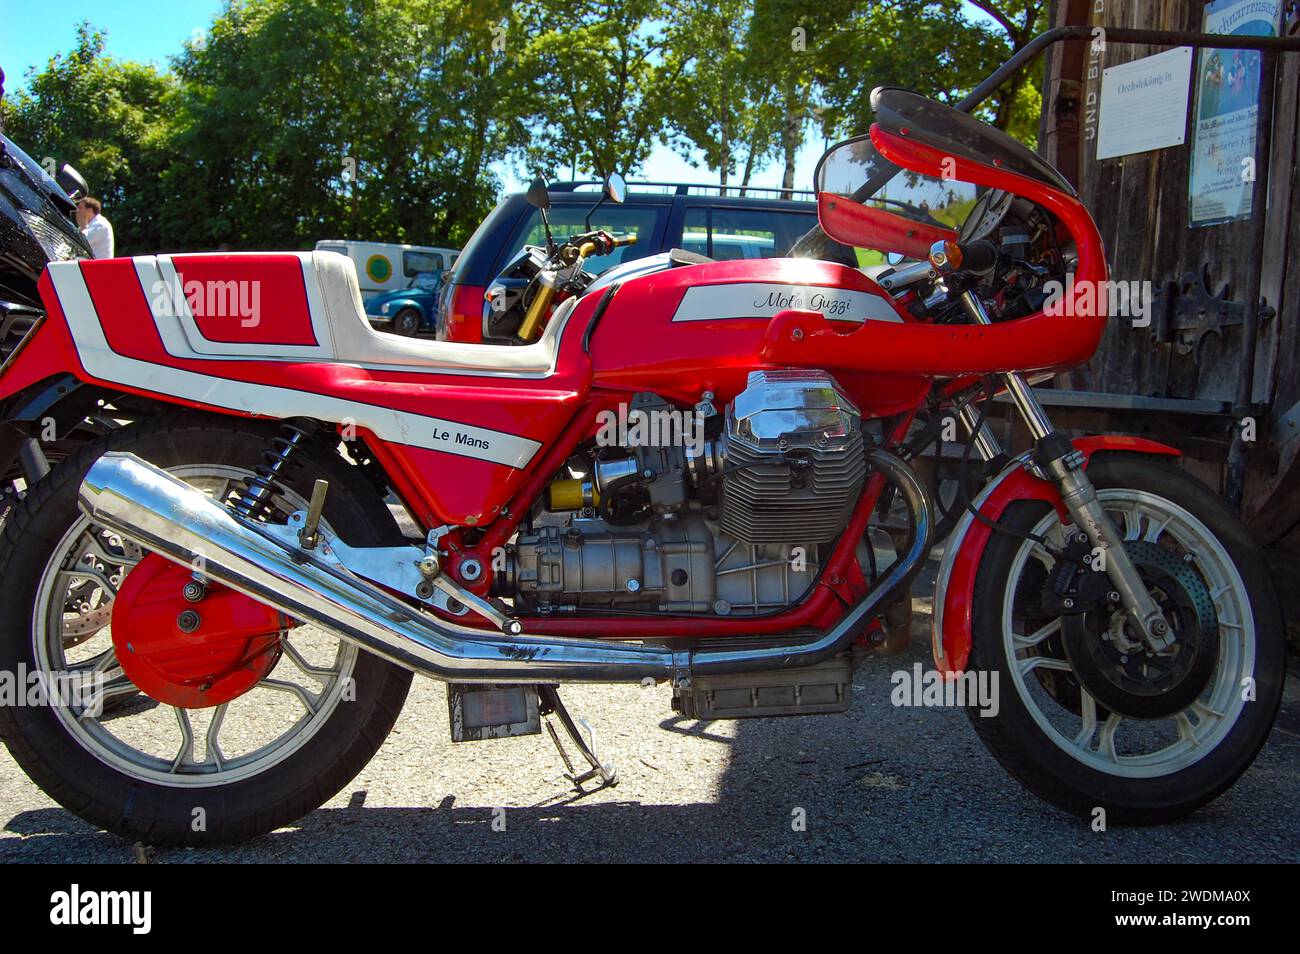 La Moto Guzzi le Mans è una moto sportiva prodotta nel 1976 dall'azienda italiana Moto Guzzi Foto Stock